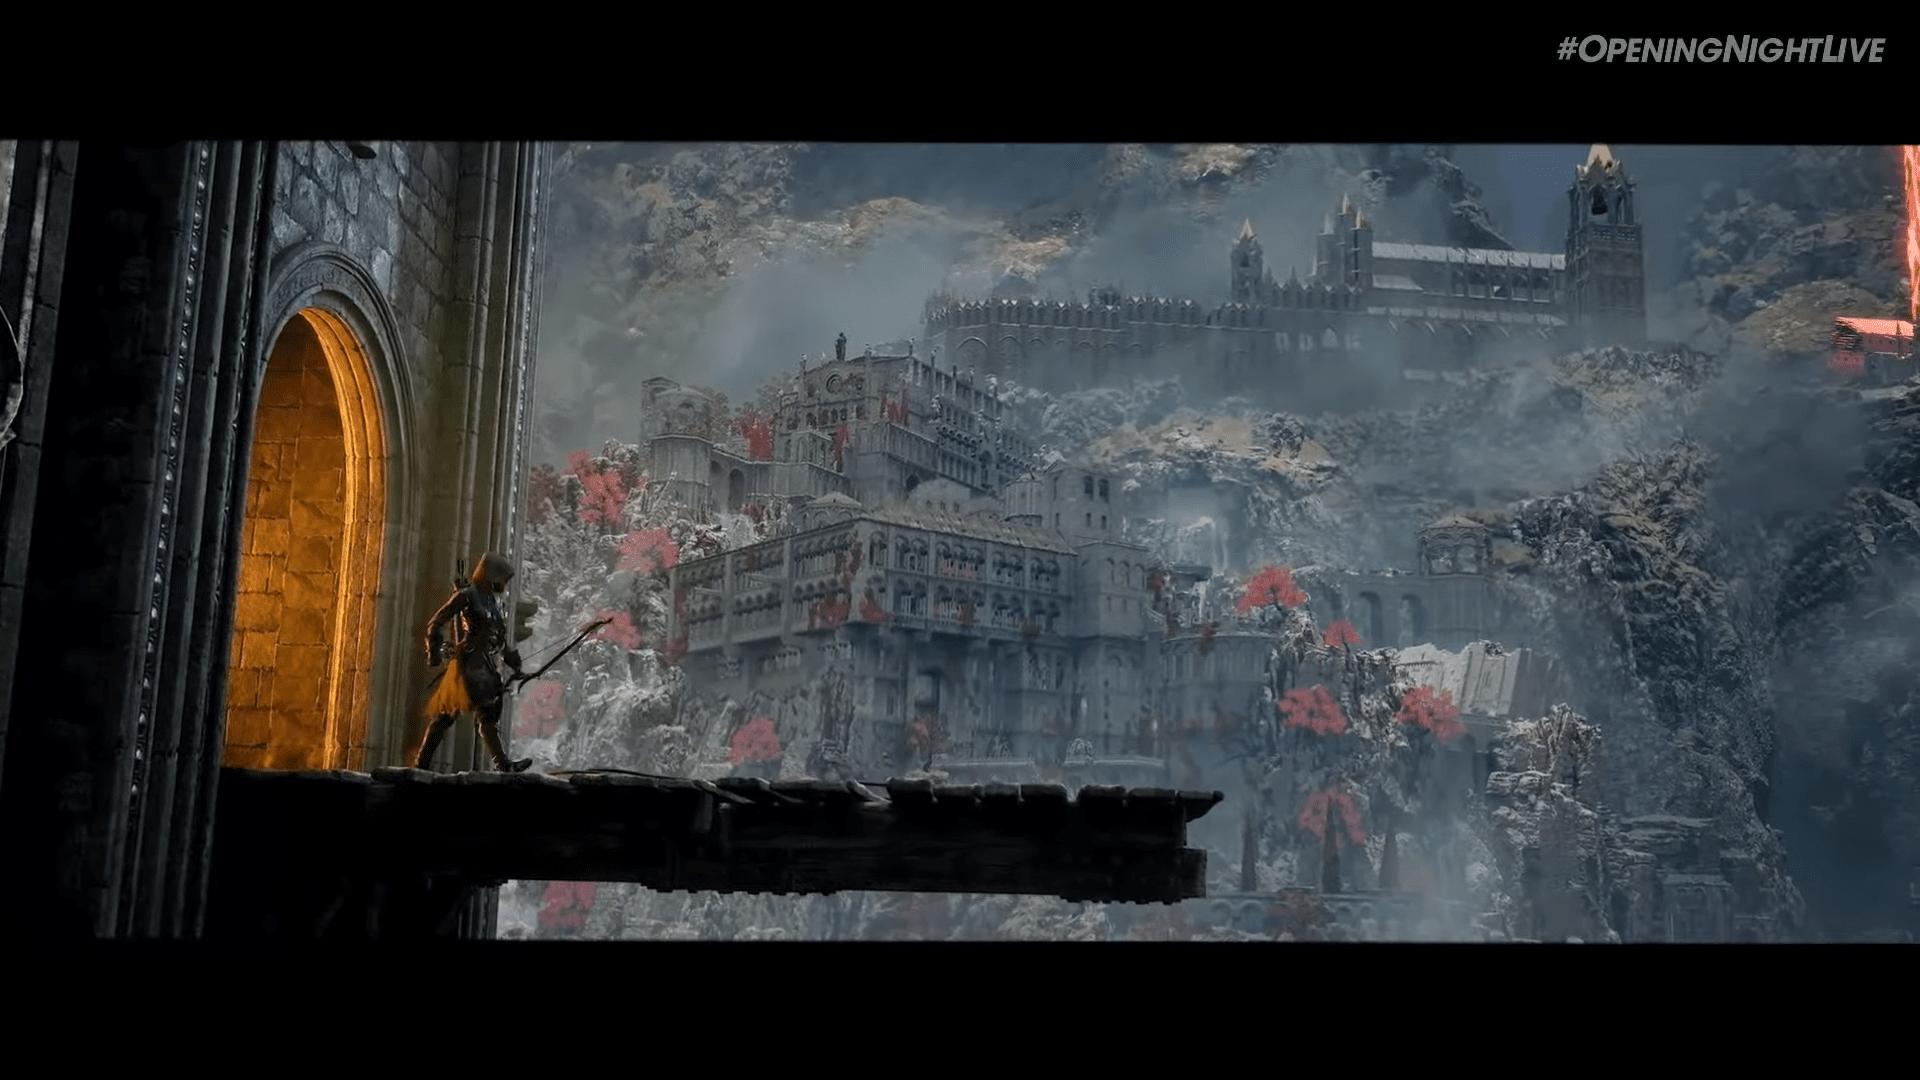 Trailer de lançamento de Dark Souls II + Requisitos mínimos